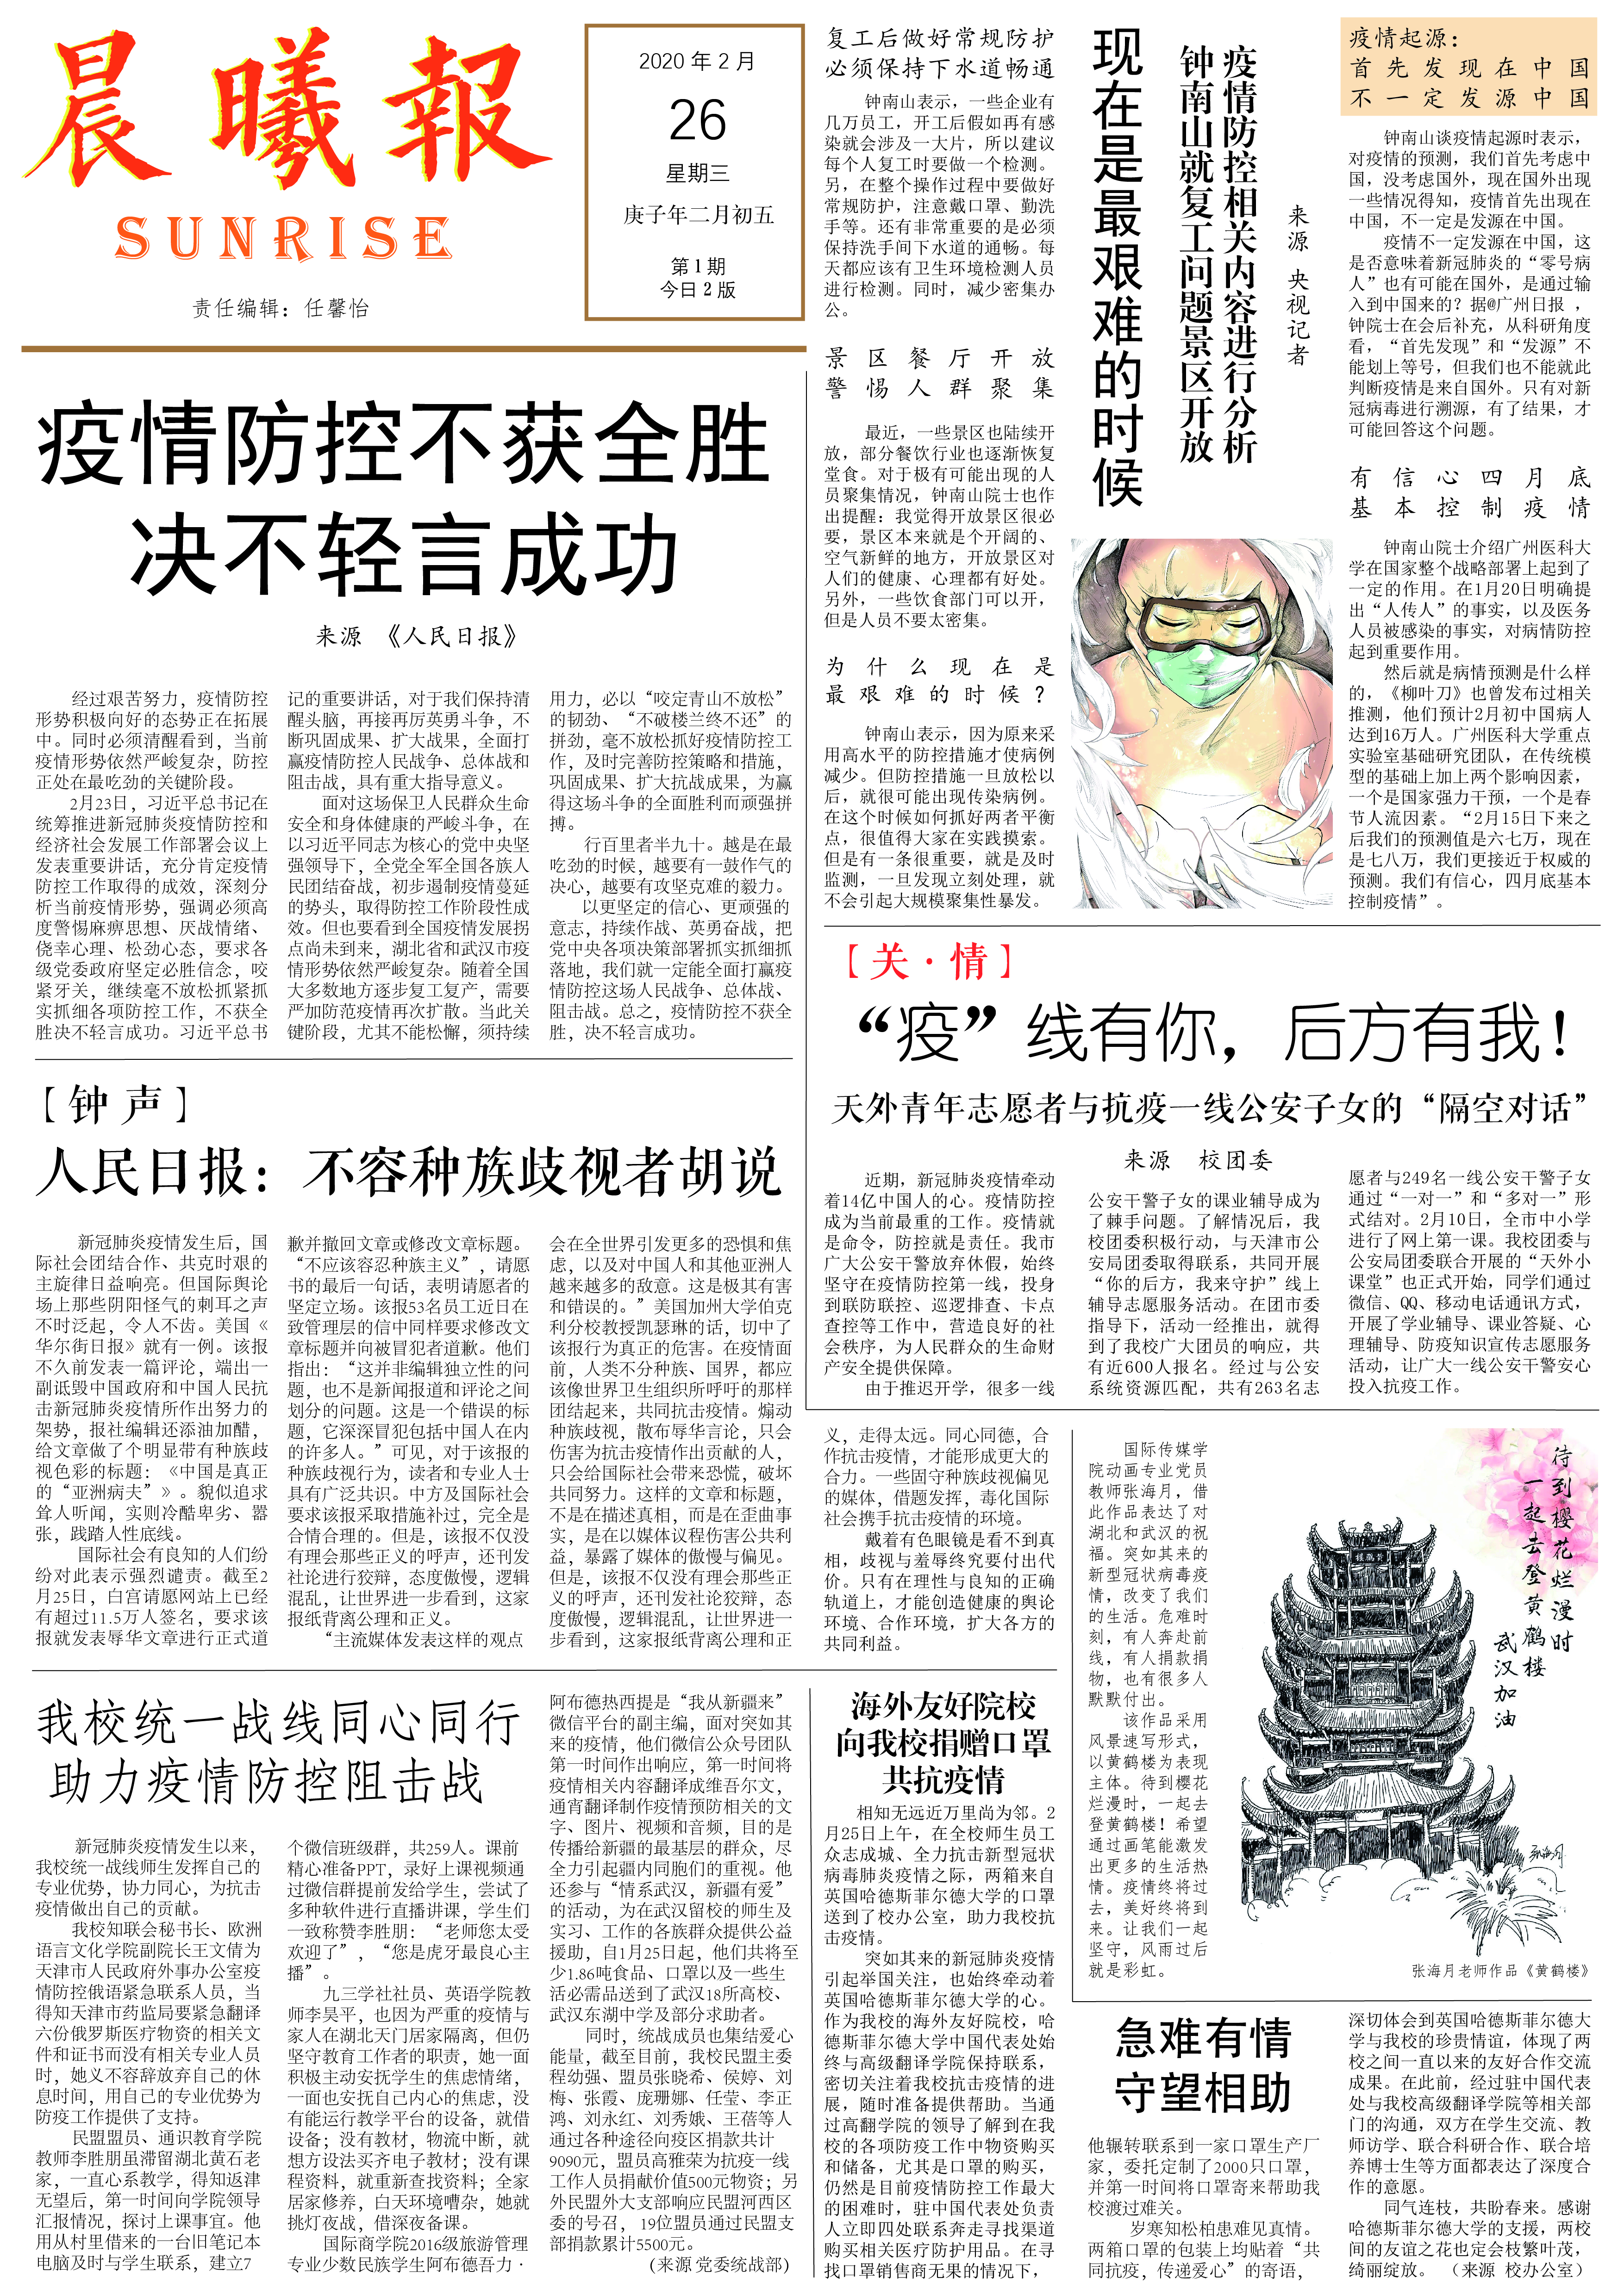 首页编者按:自从疫情爆发以来,天津外国语大学国际传媒学院新闻传播